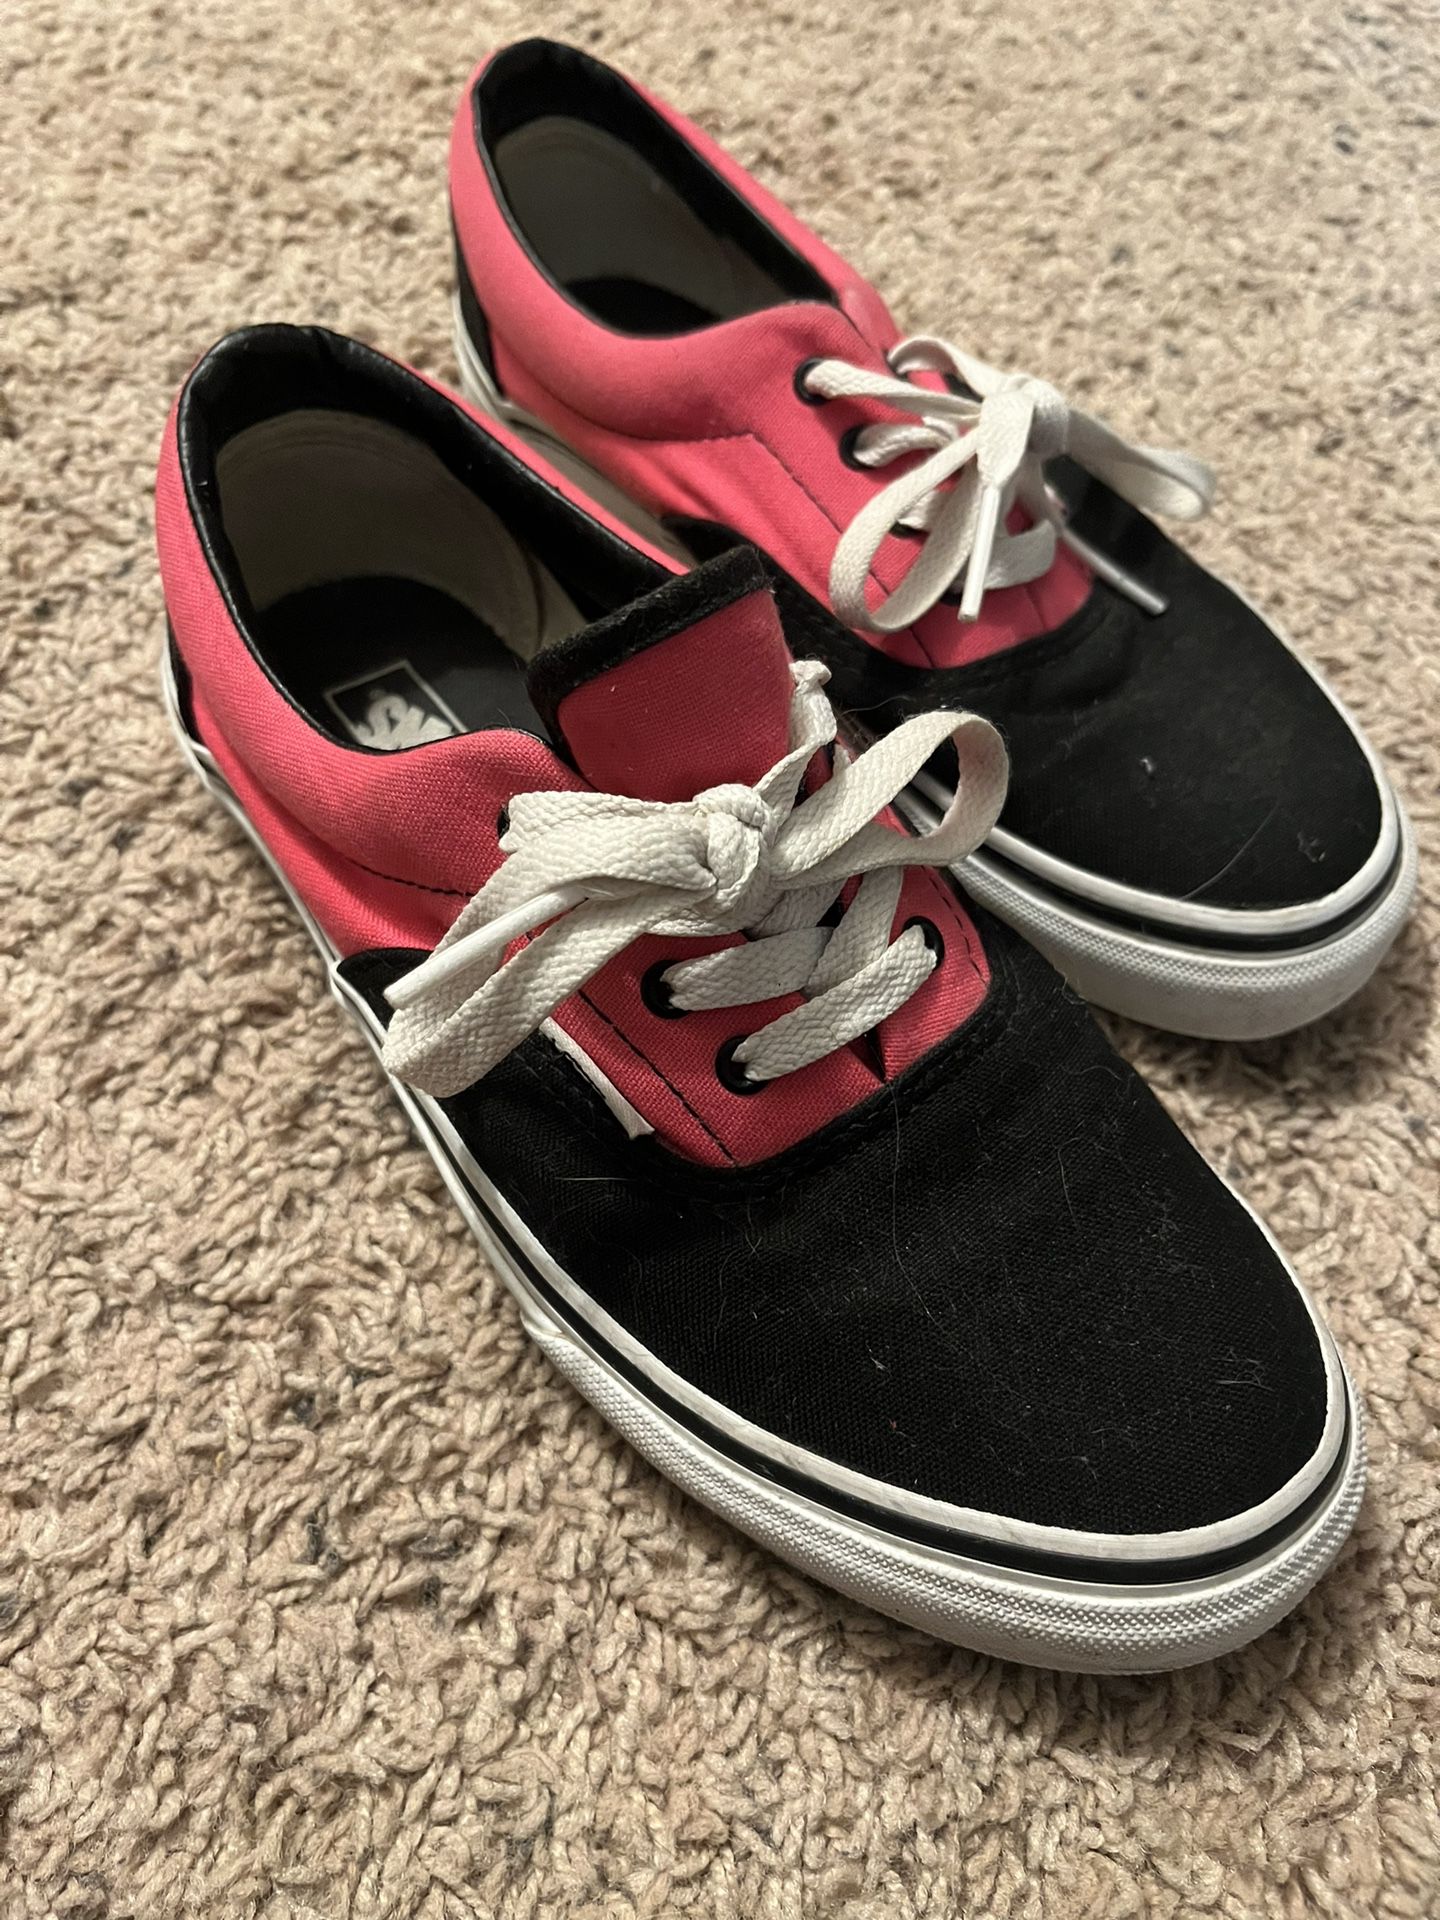 Vans Old Skool Black And Pink Skater Shoes Size 4.0 Kids